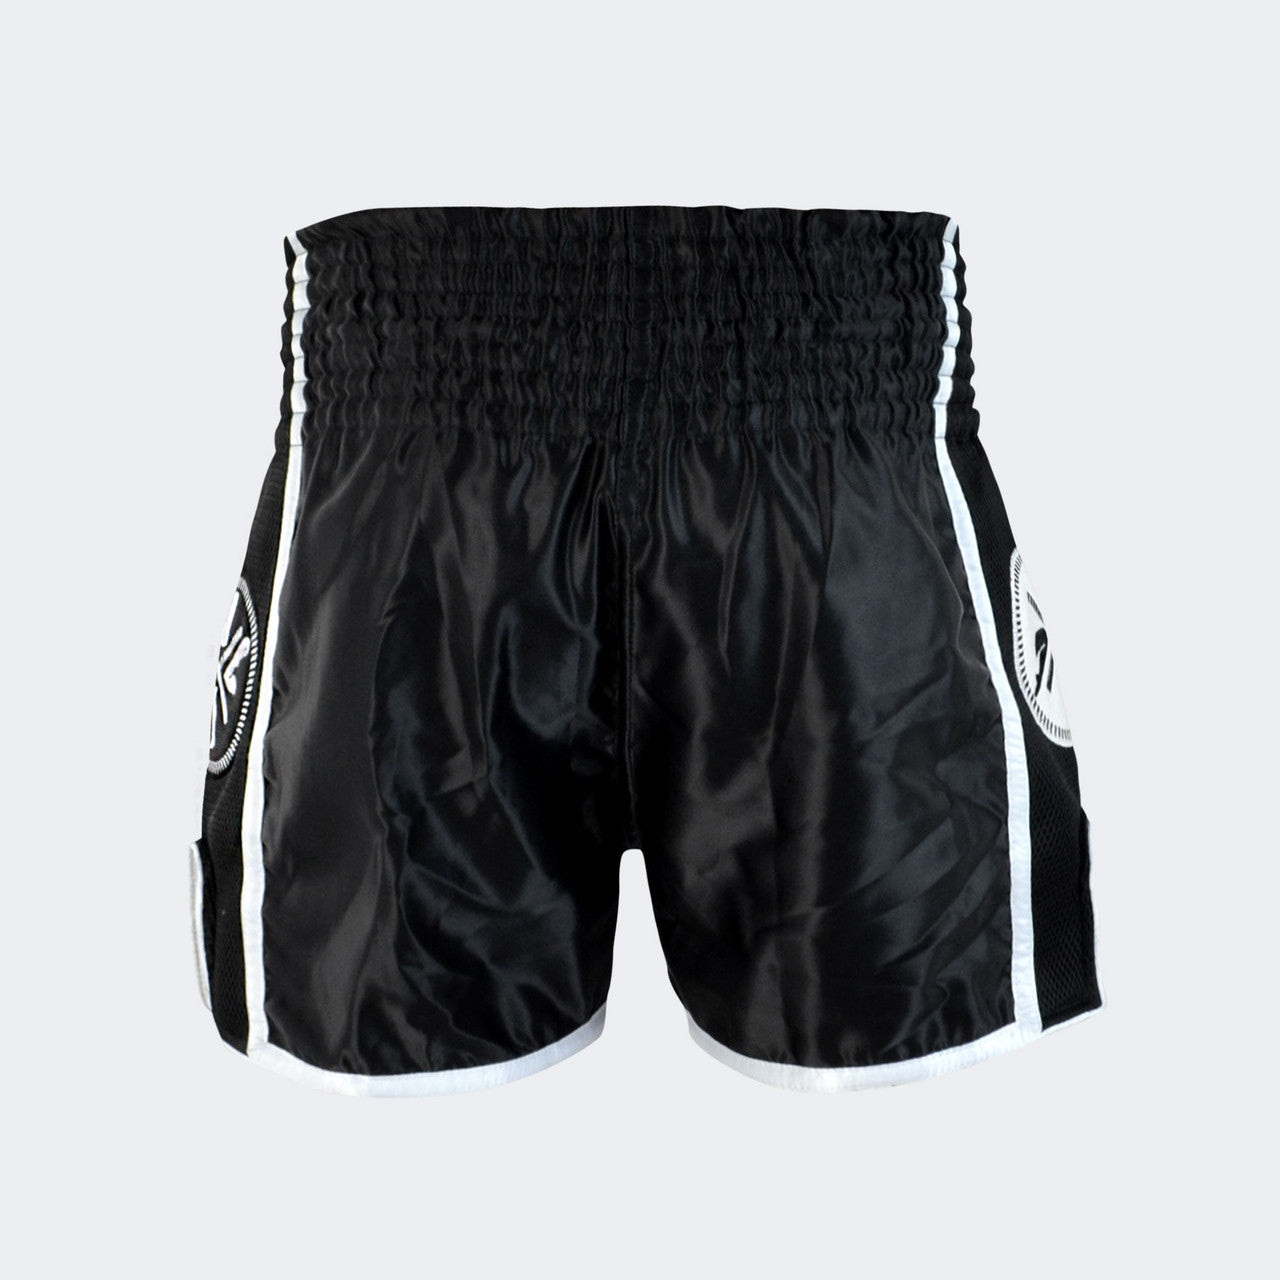 Svart / Hvit CRNR Muay Thai Shorts